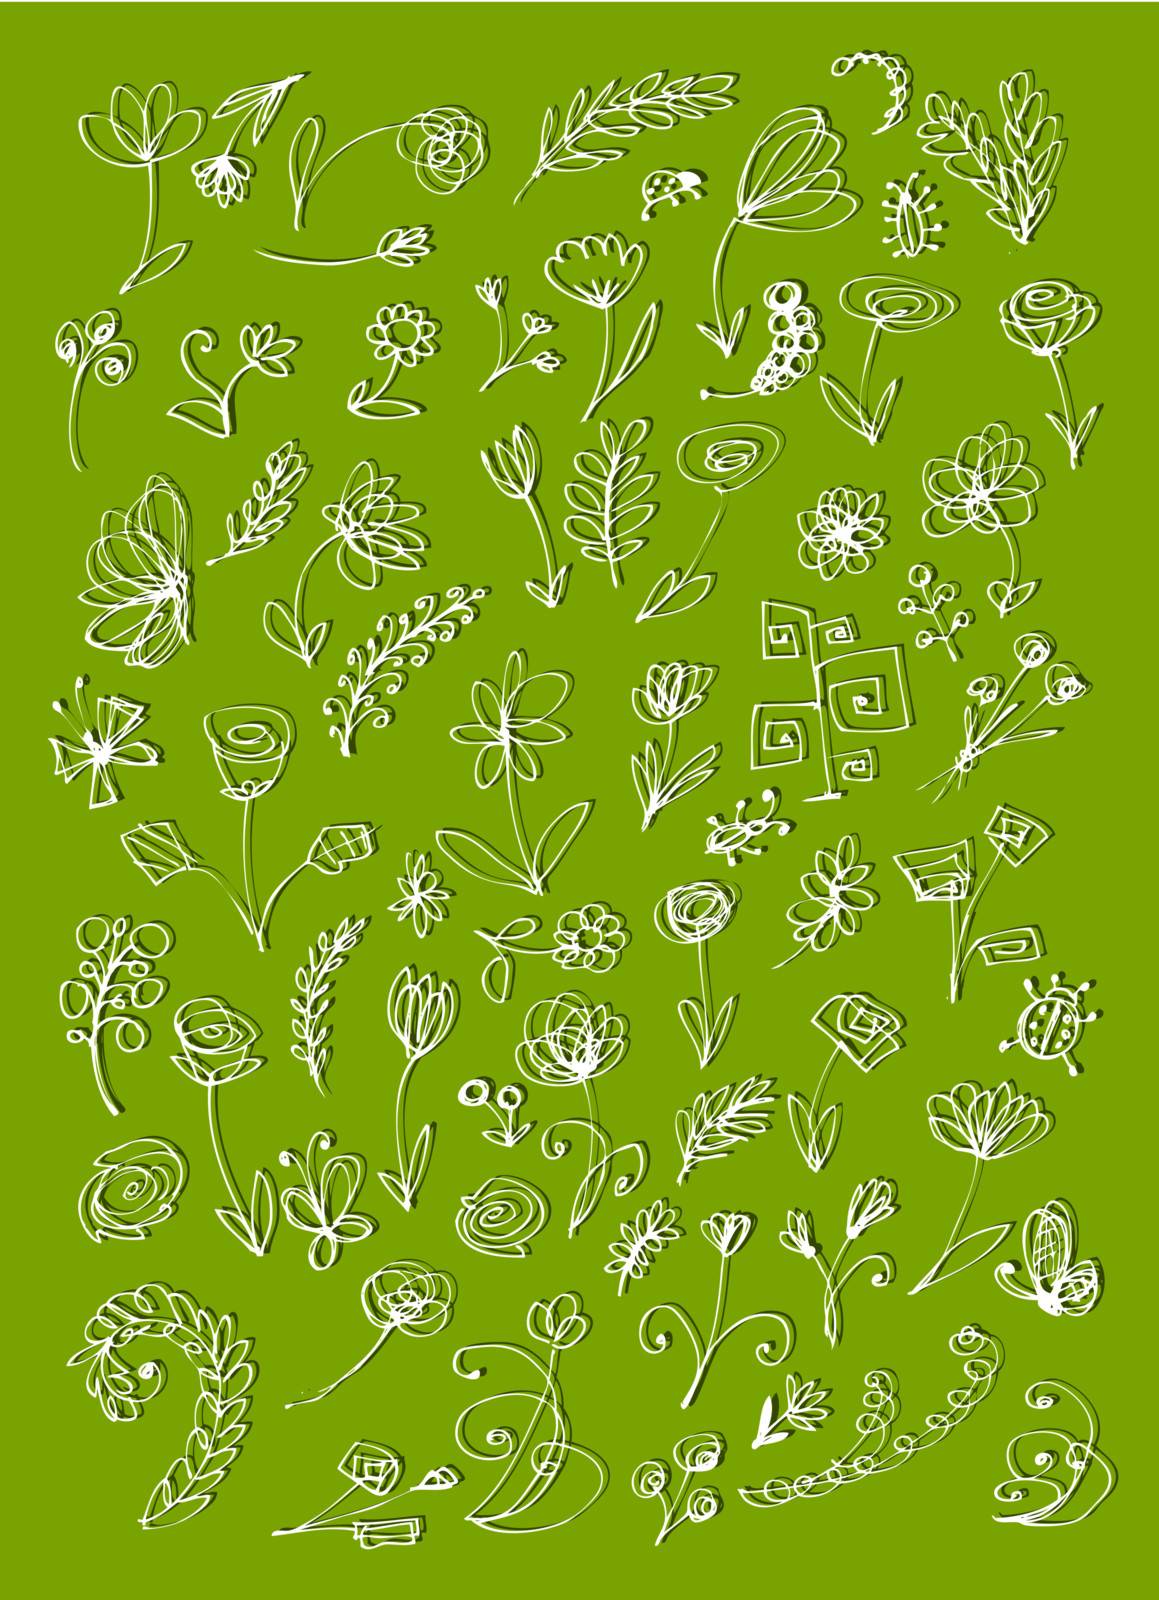 Sketch of floral elements for your design  by Kudryashka